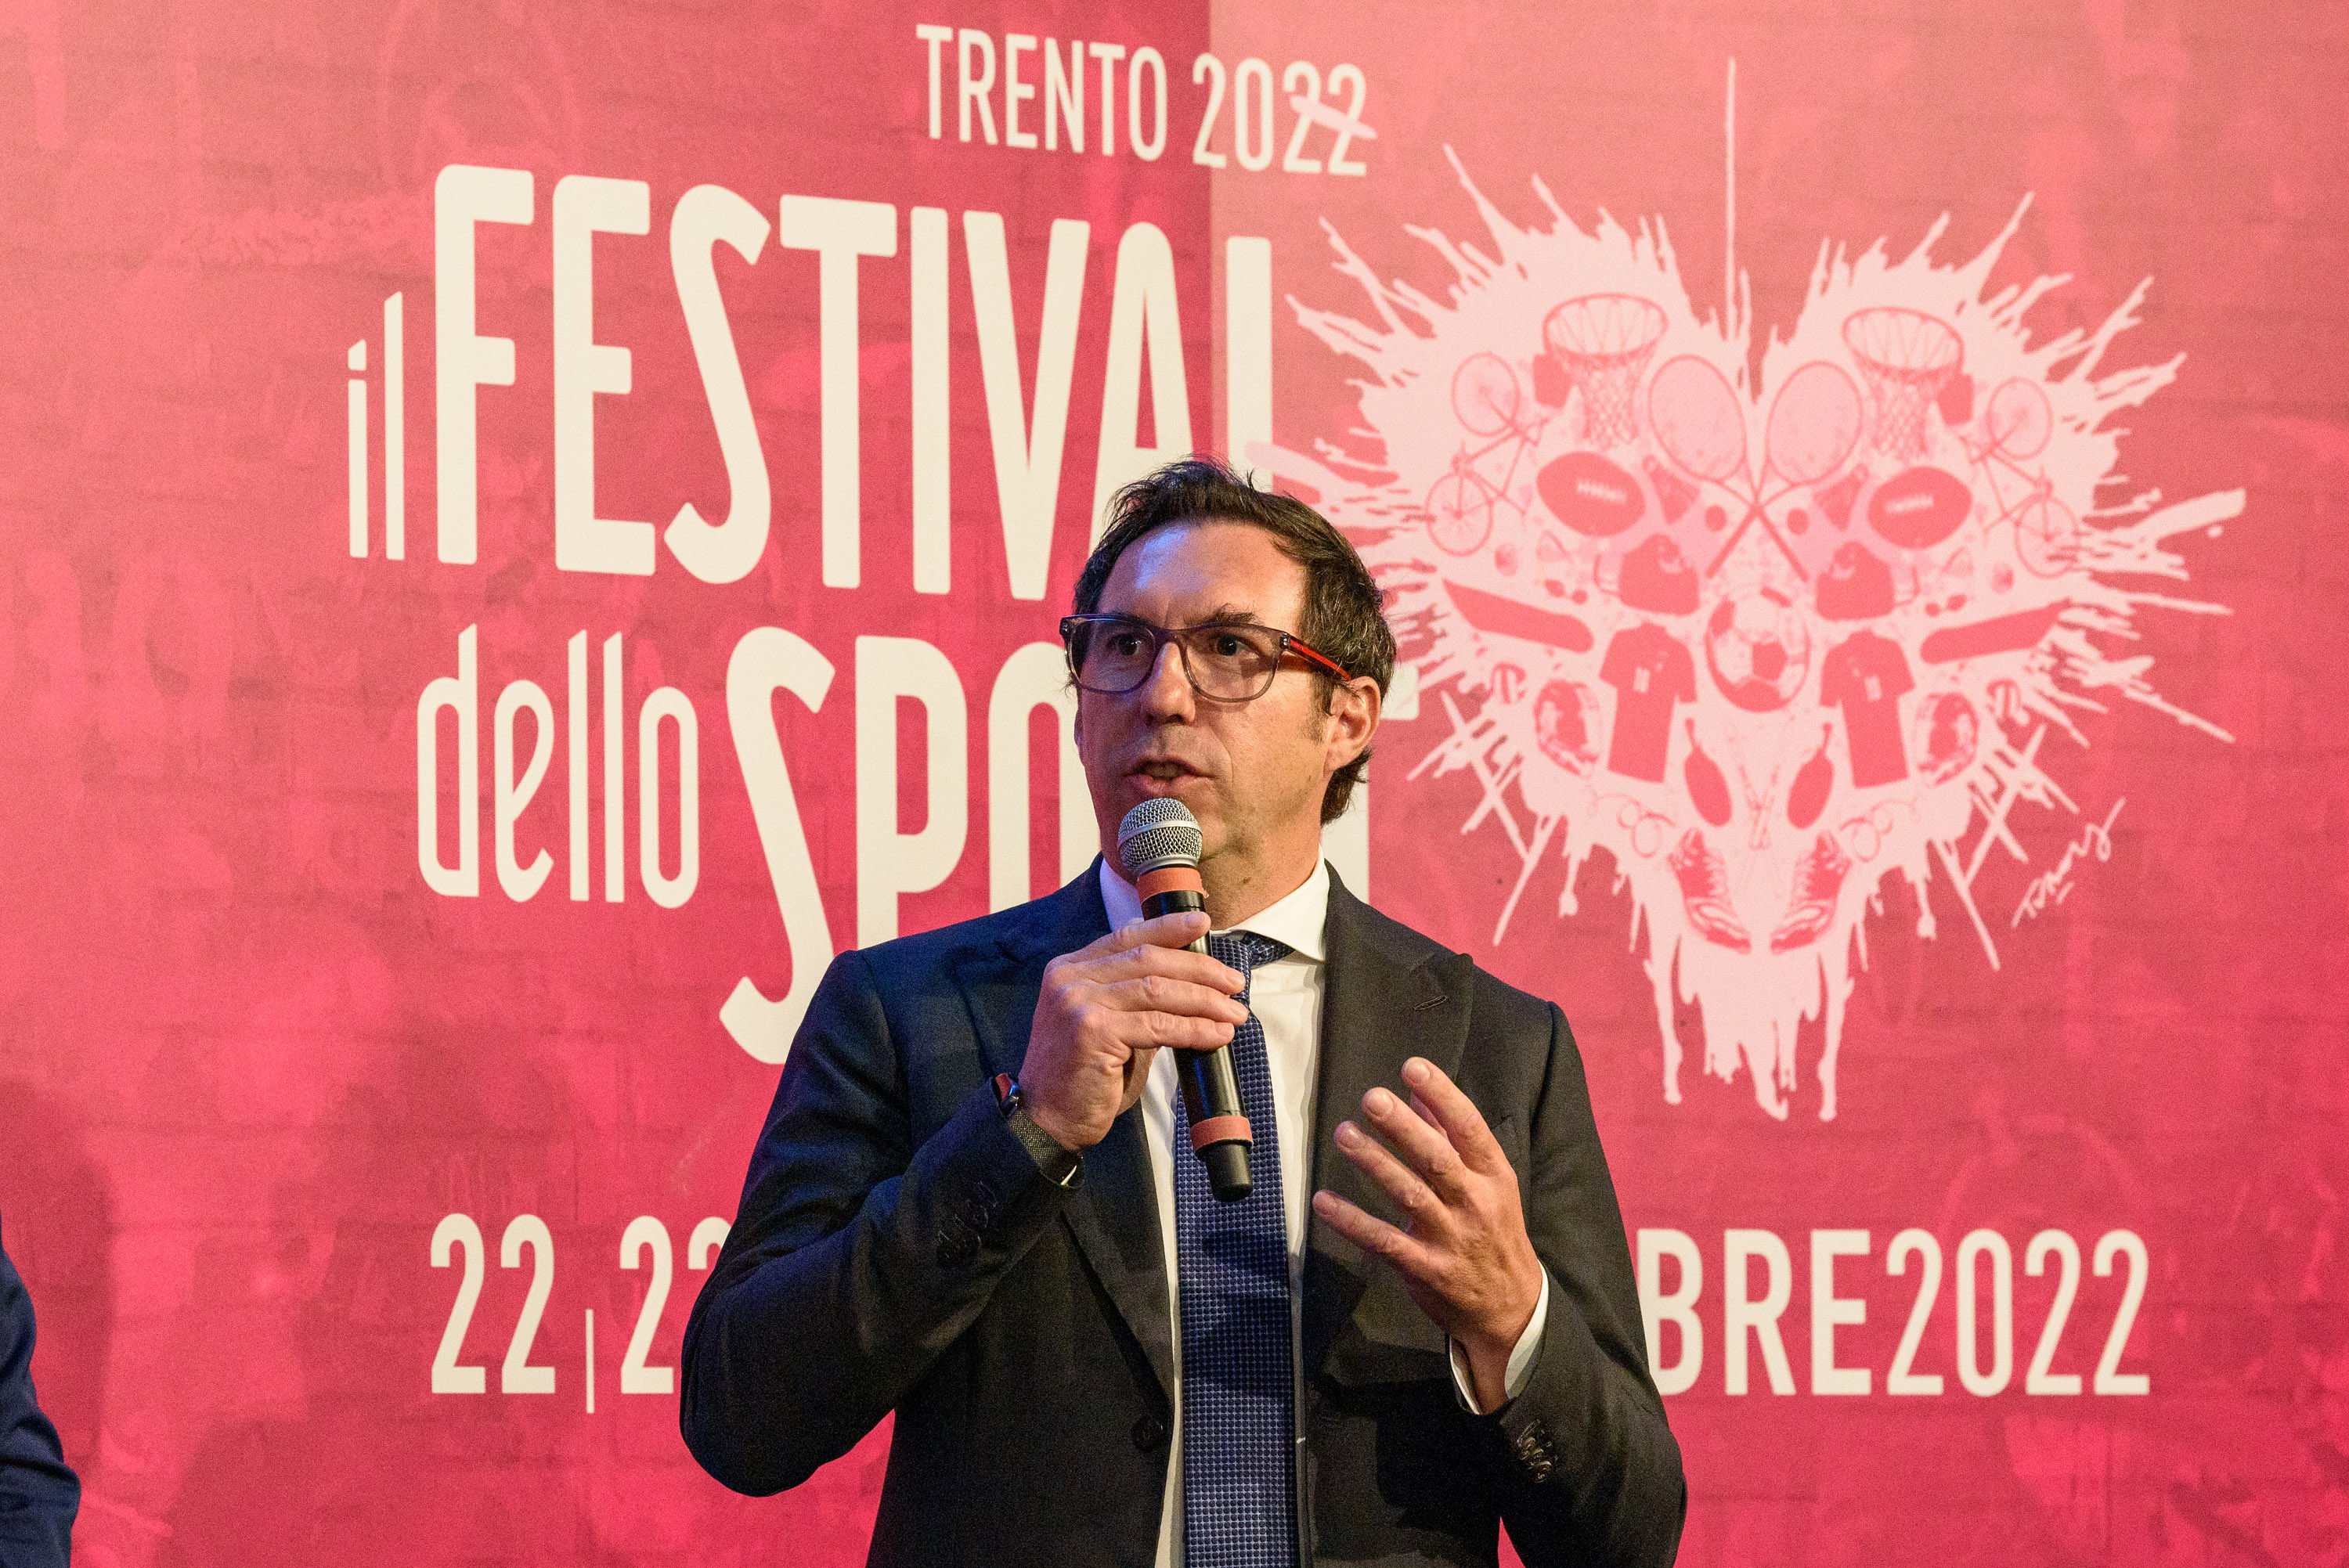 A Milano la presentazione del programma del Festival dello Sport 2022 (Gianni Battaiola, Presidente Trentino Marketing)